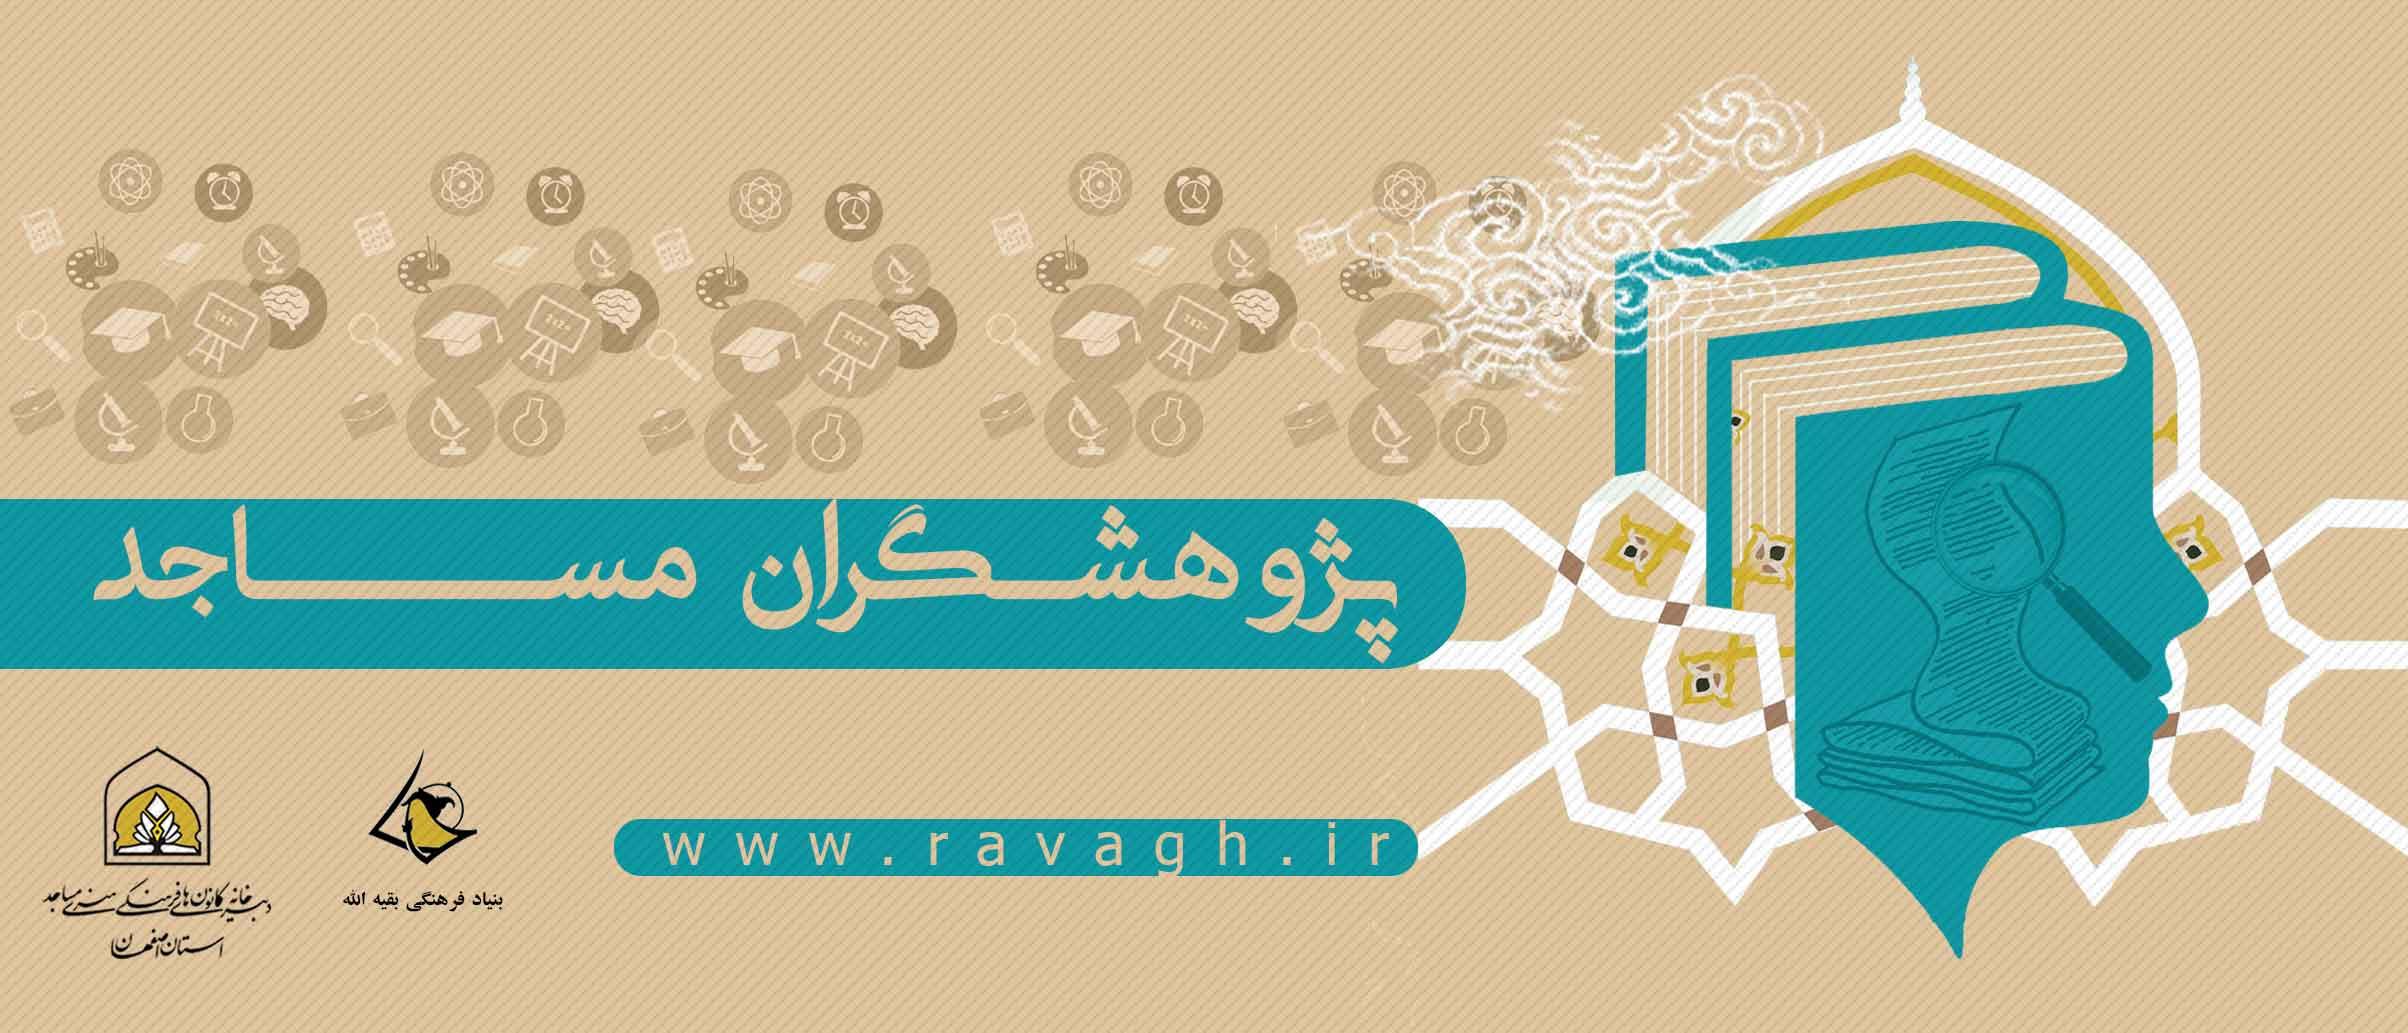 جشنواره تجلیل از پژوهشگران مساجد و مراکز فرهنگی